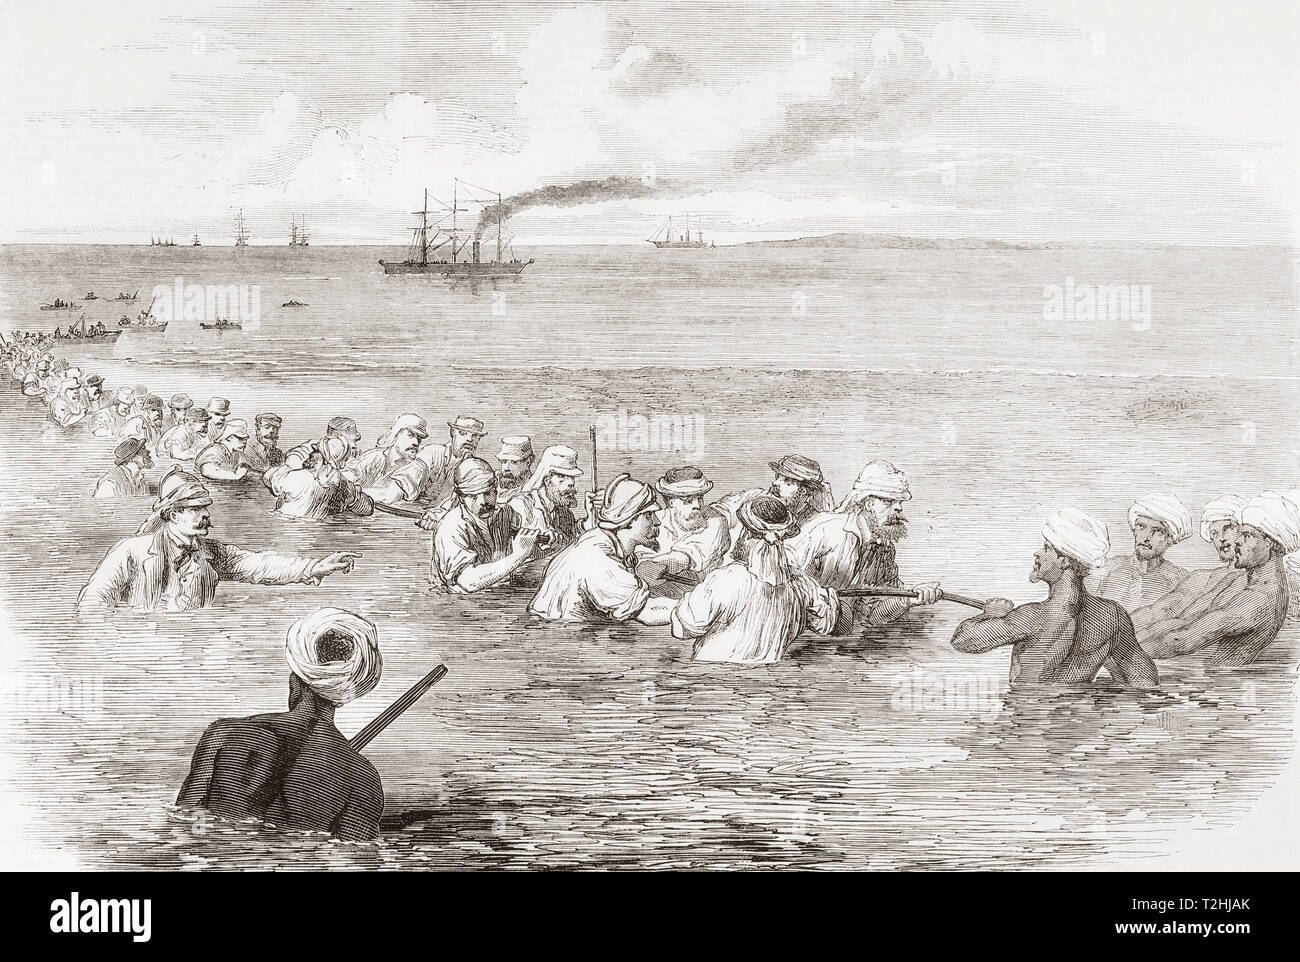 Die indoeuropäischen Telegraph, die Landung der Kabel in den Schlamm in der Fao, Persischer Golf. Von der Illustrated London News, veröffentlicht 1865. Stockfoto